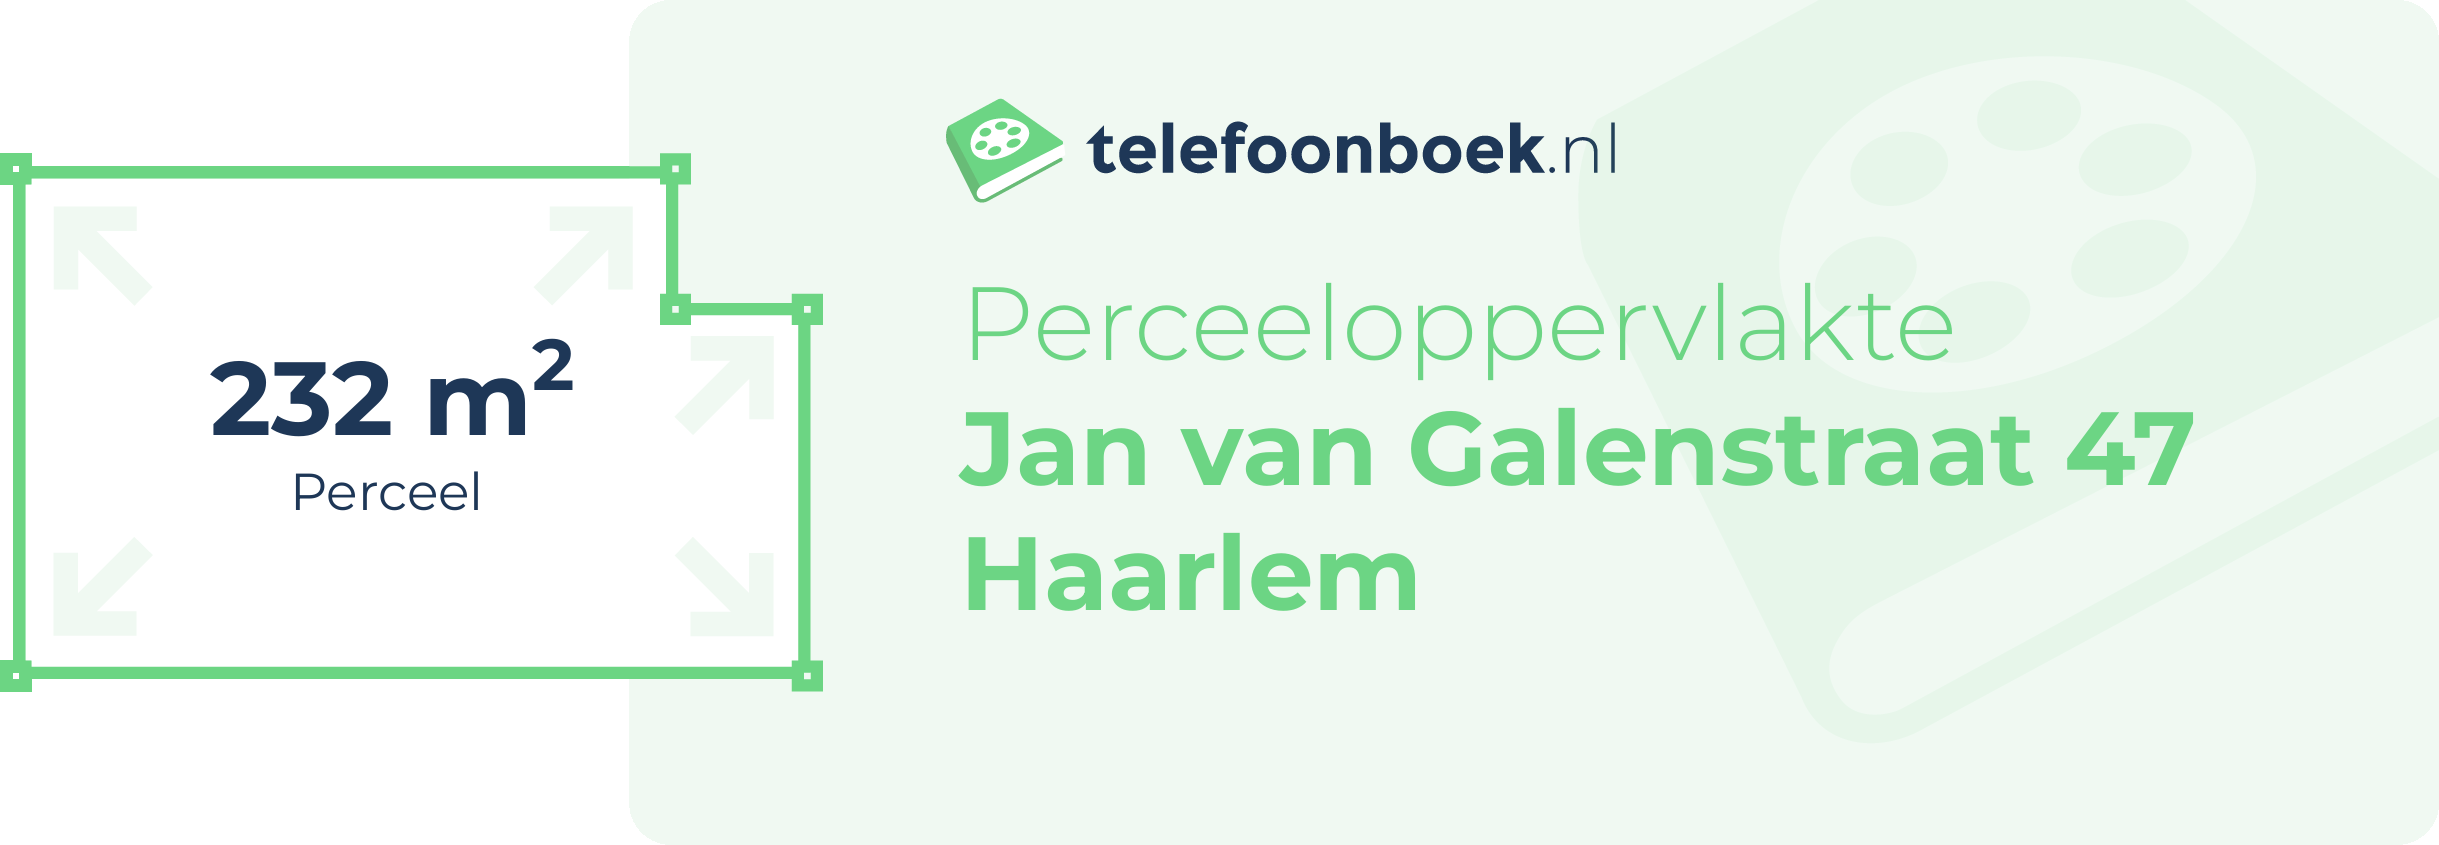 Perceeloppervlakte Jan Van Galenstraat 47 Haarlem